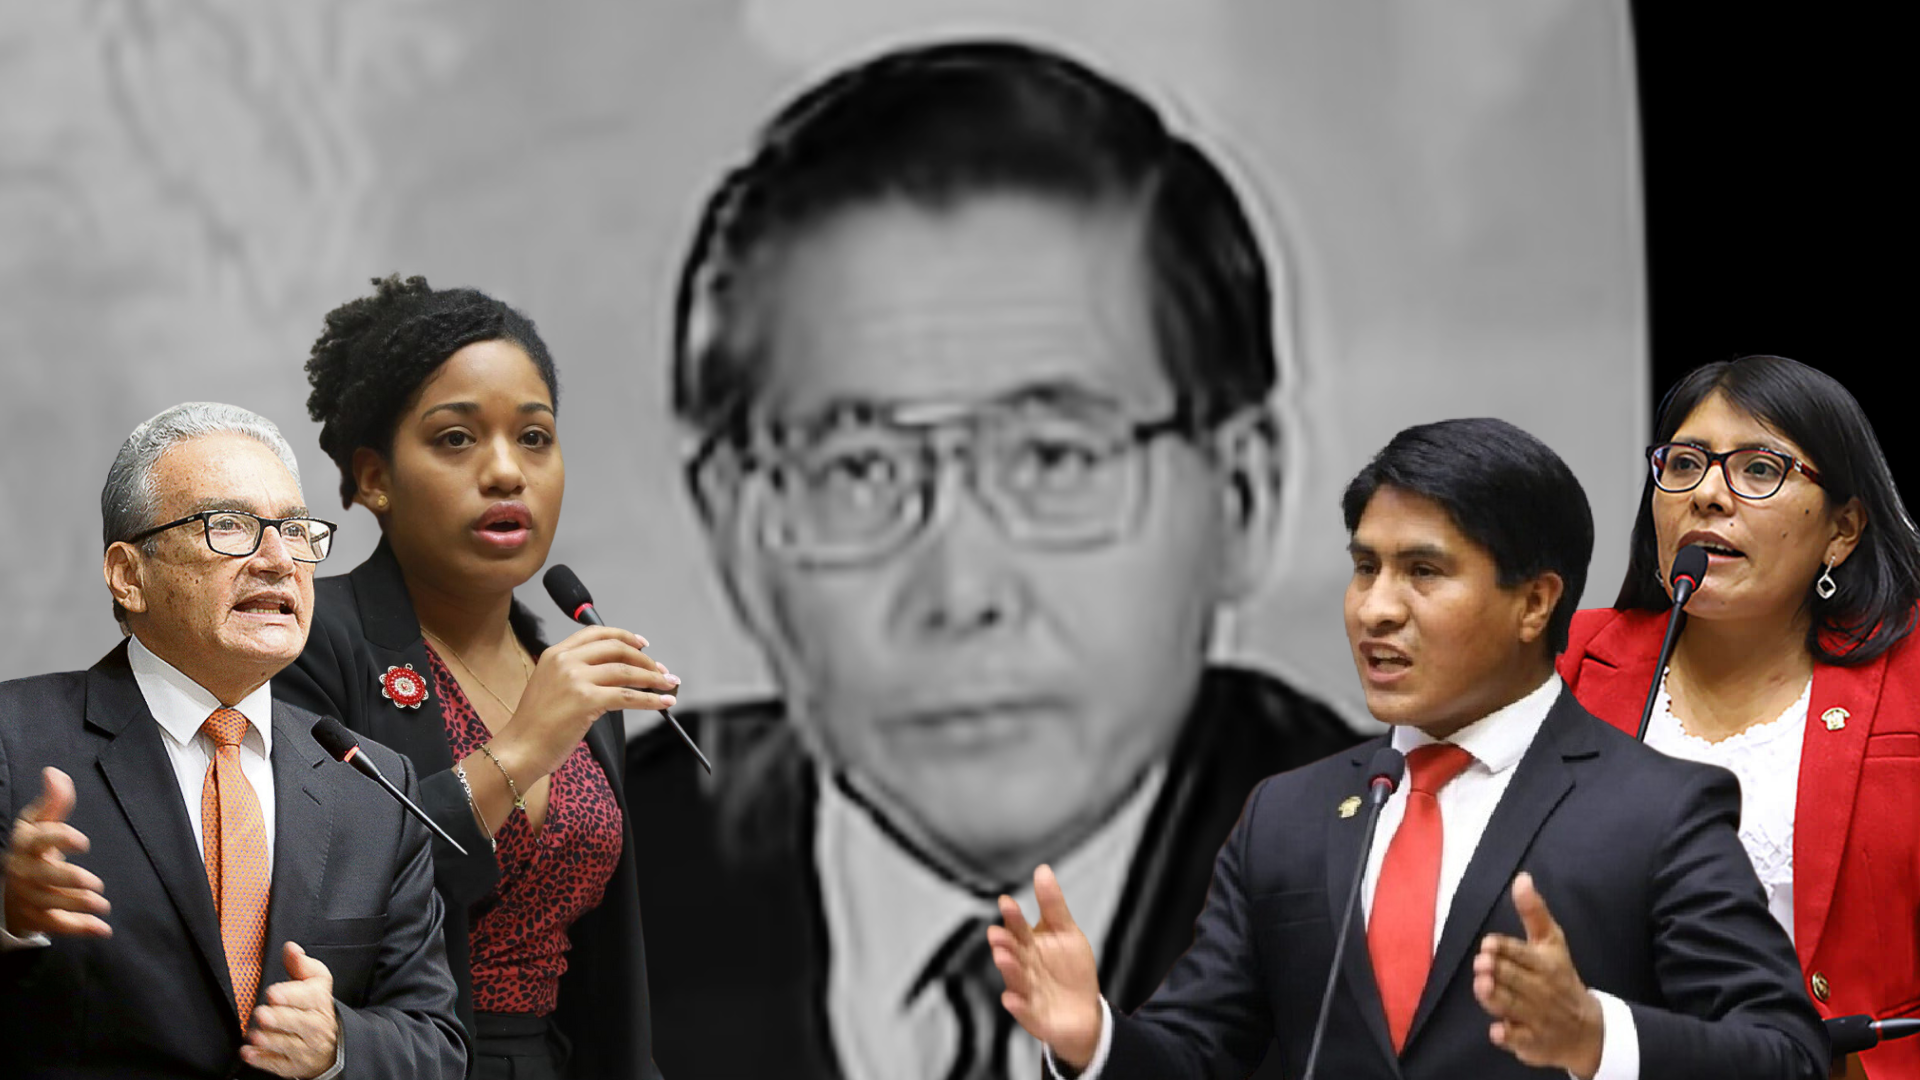 Autogolpe de Alberto Fujimori: Congreso se divide entre rechazo y celebraciones por el 5 de abril